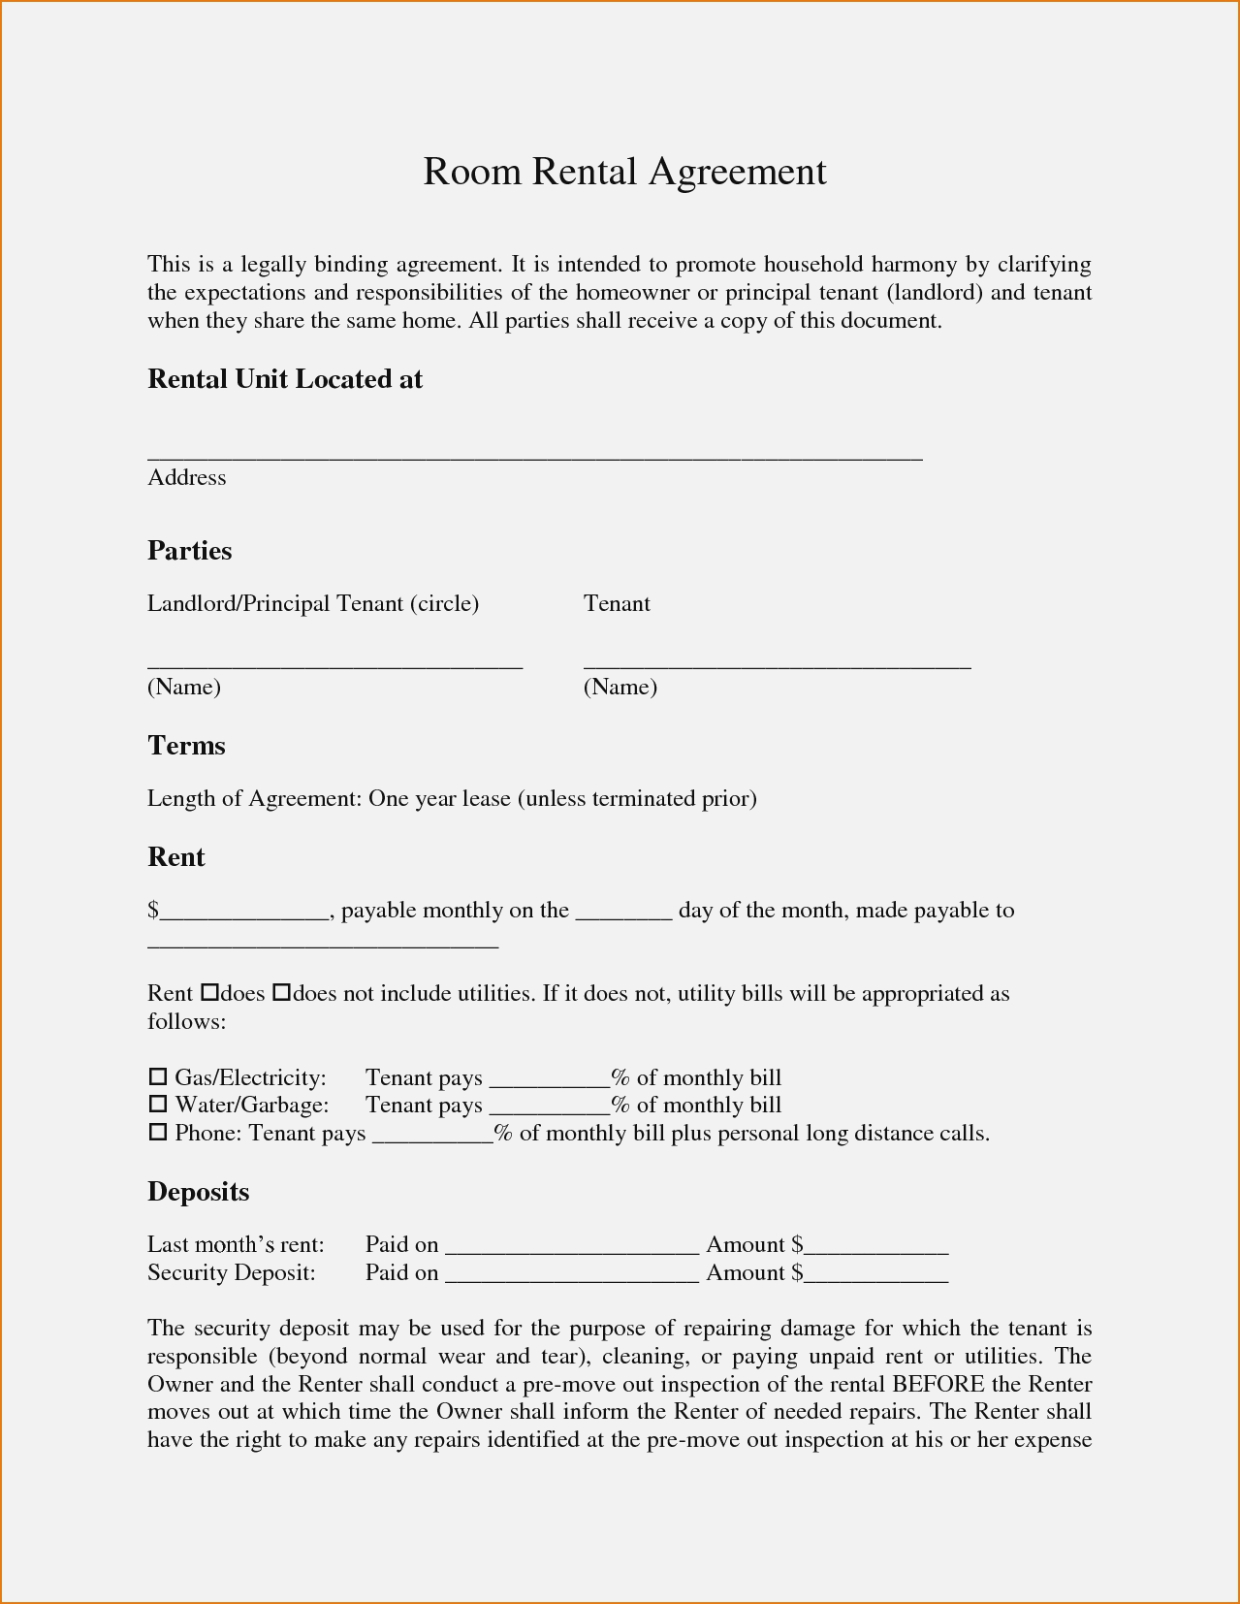 Simple Room Lease Agreement Simple Room Rental Agreement Form Free Last 12 Room Lease Agreement